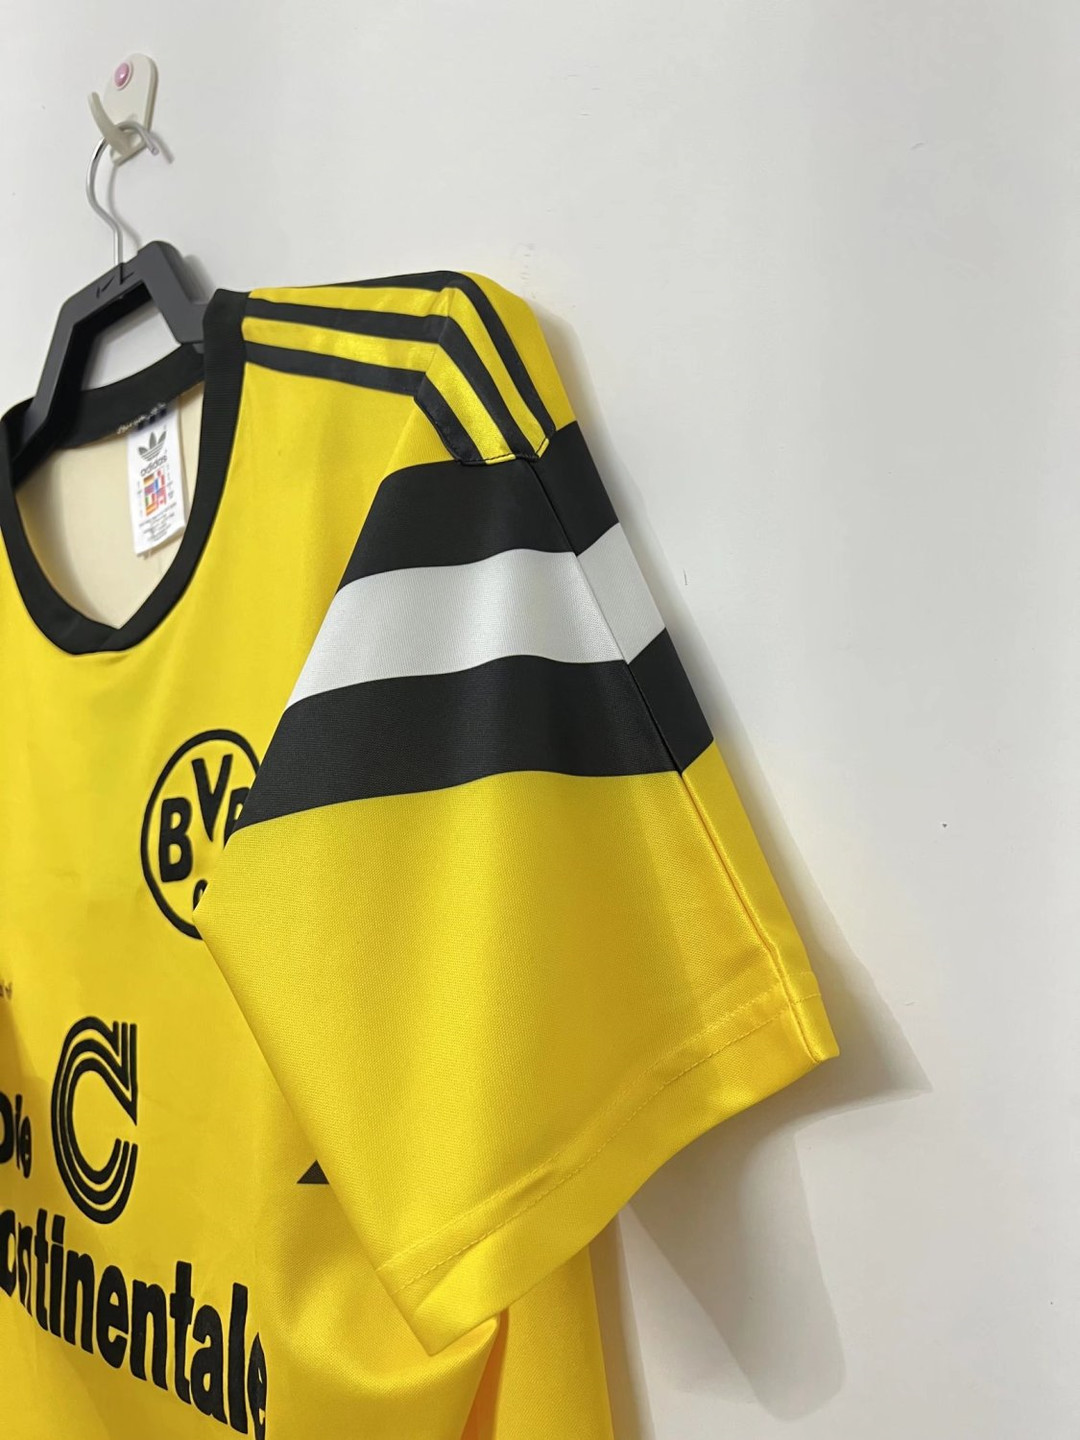 Borussia Dortmund Soccer Jersey Replica Retro Home Mens 1989/90